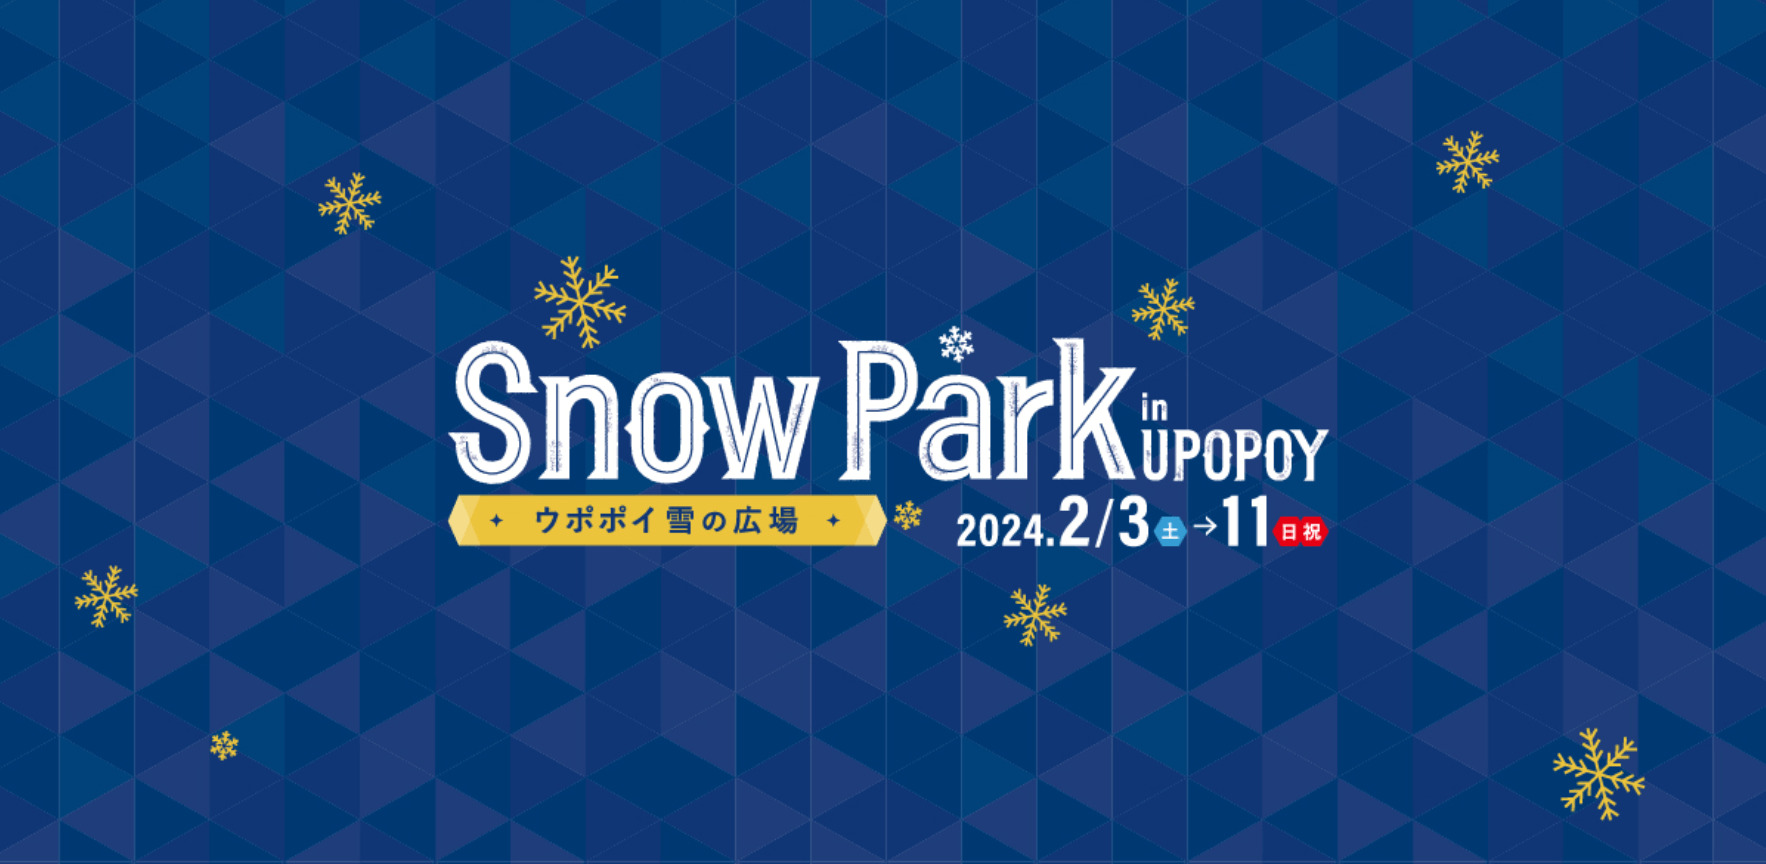 ウポポイ雪の広場 Snow Park in UPOPOY